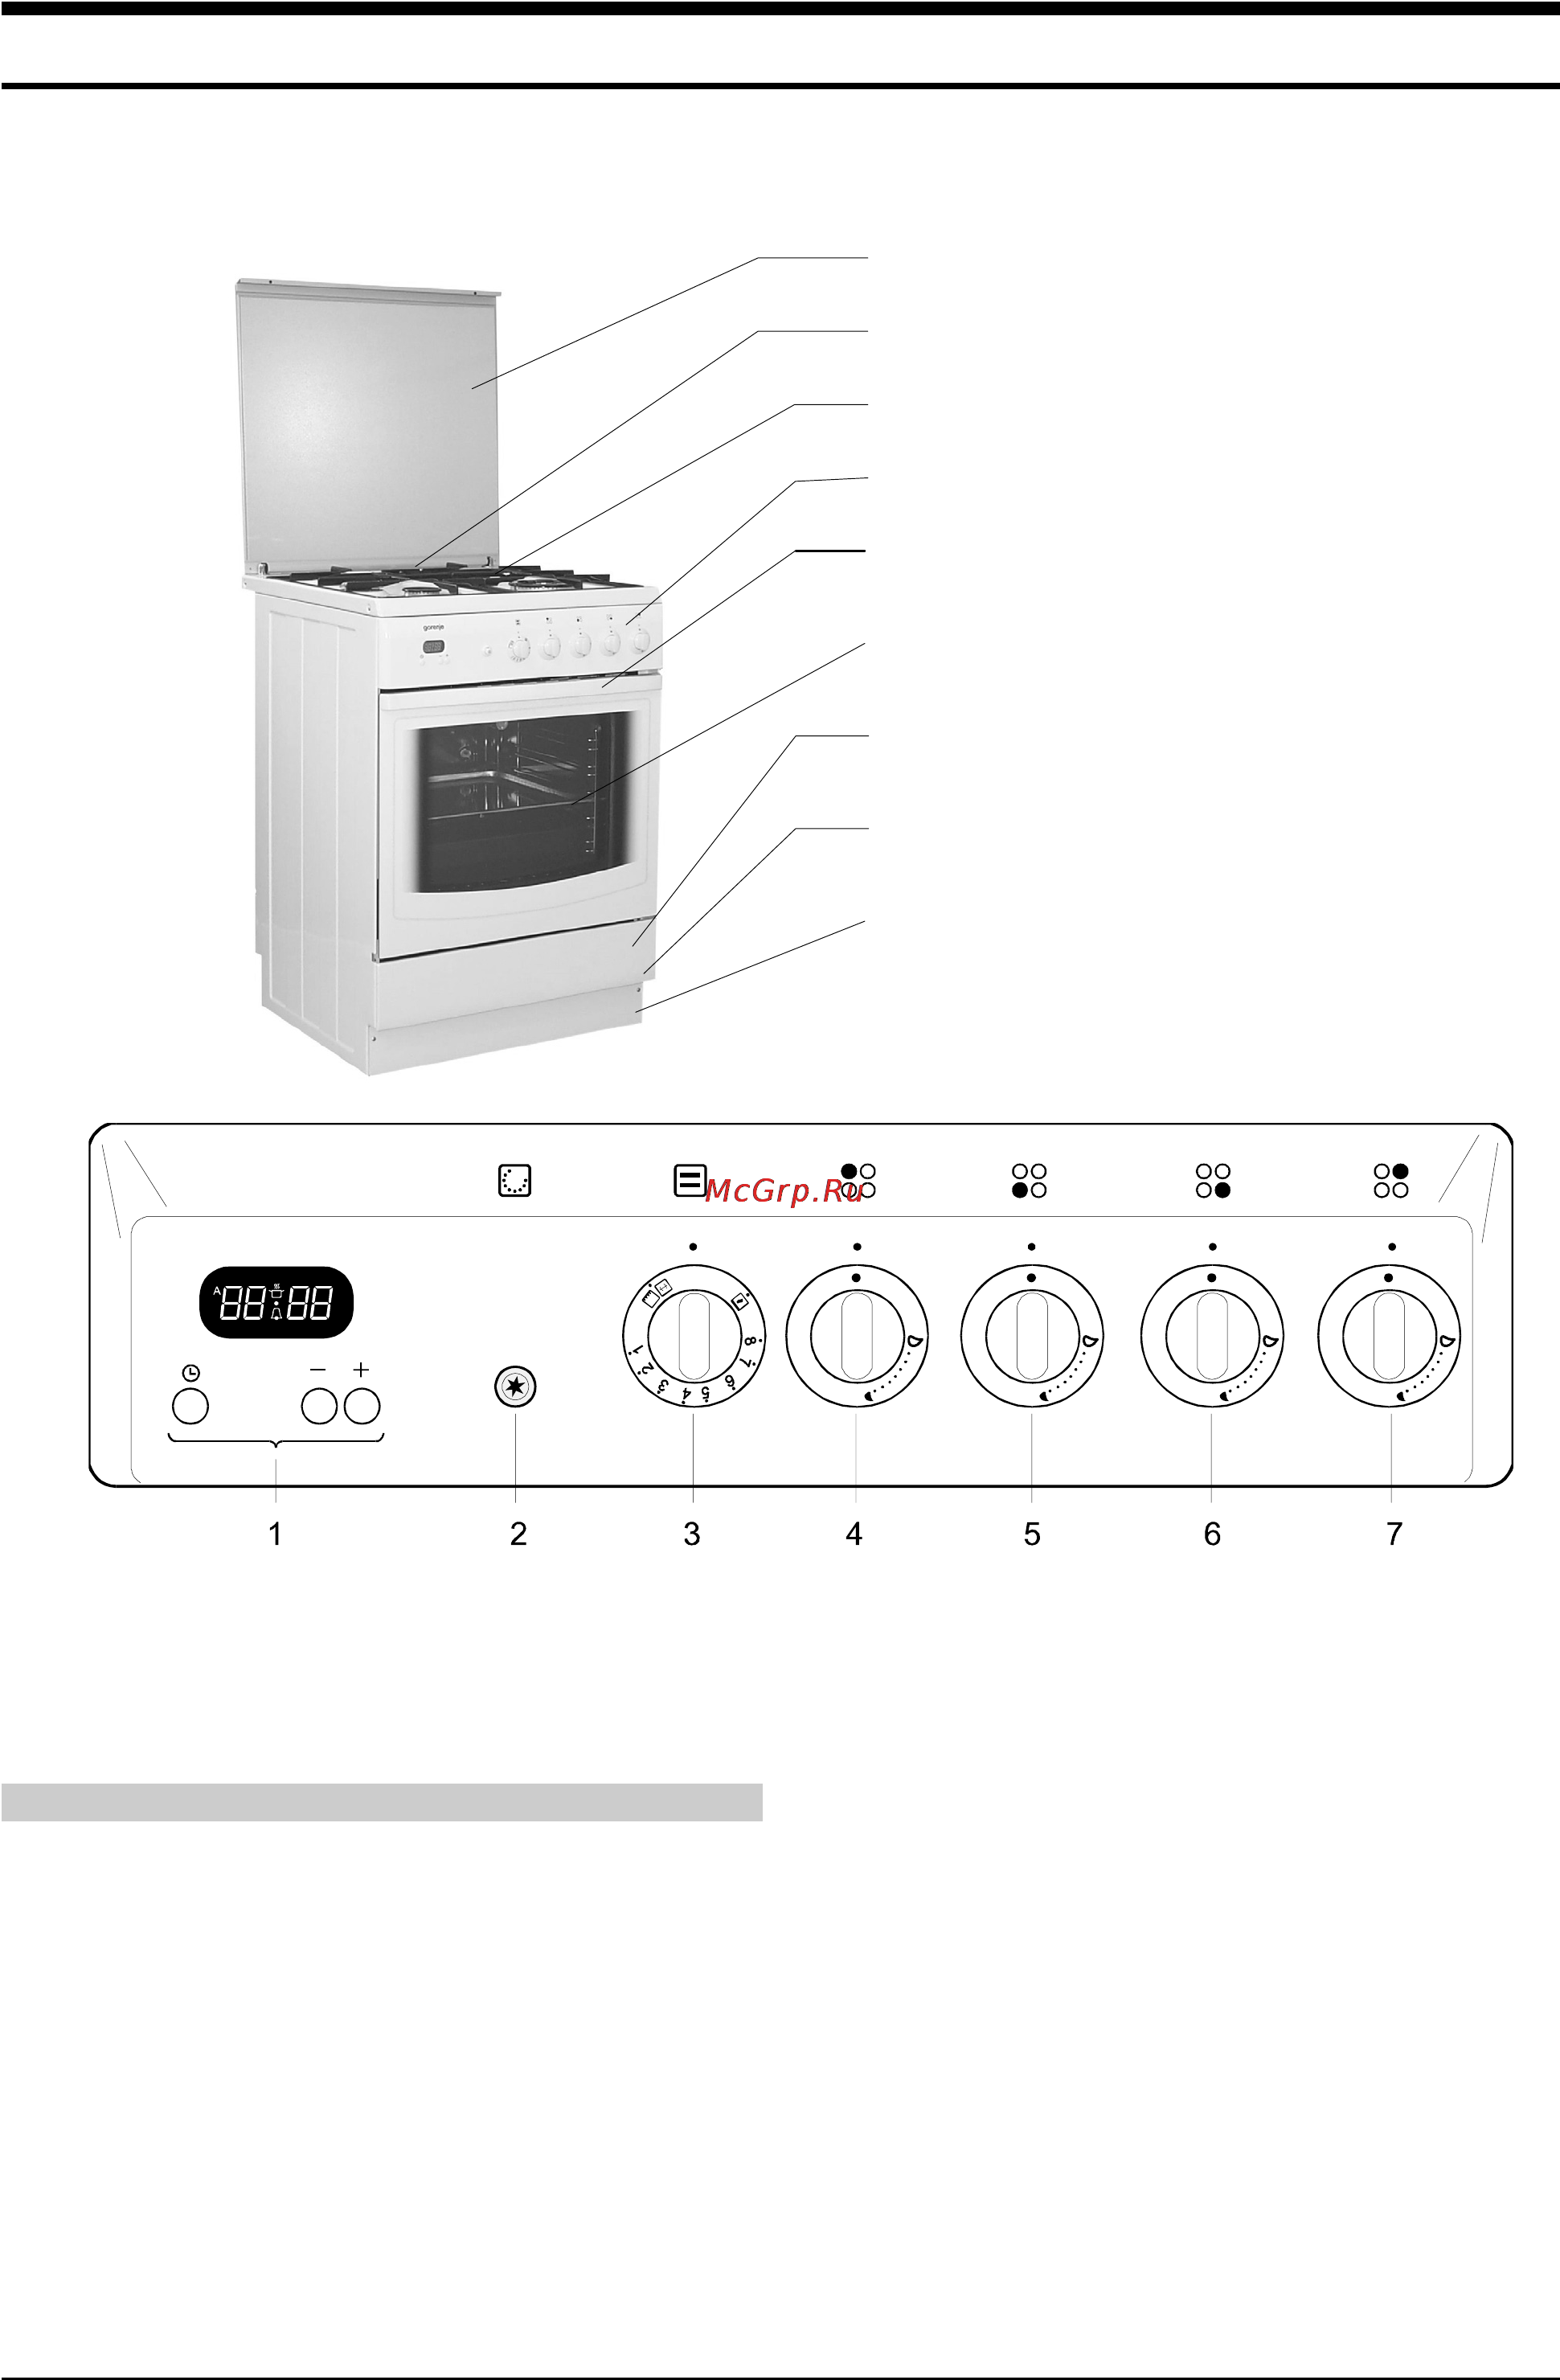 Как определить температуру в духовке без термометра